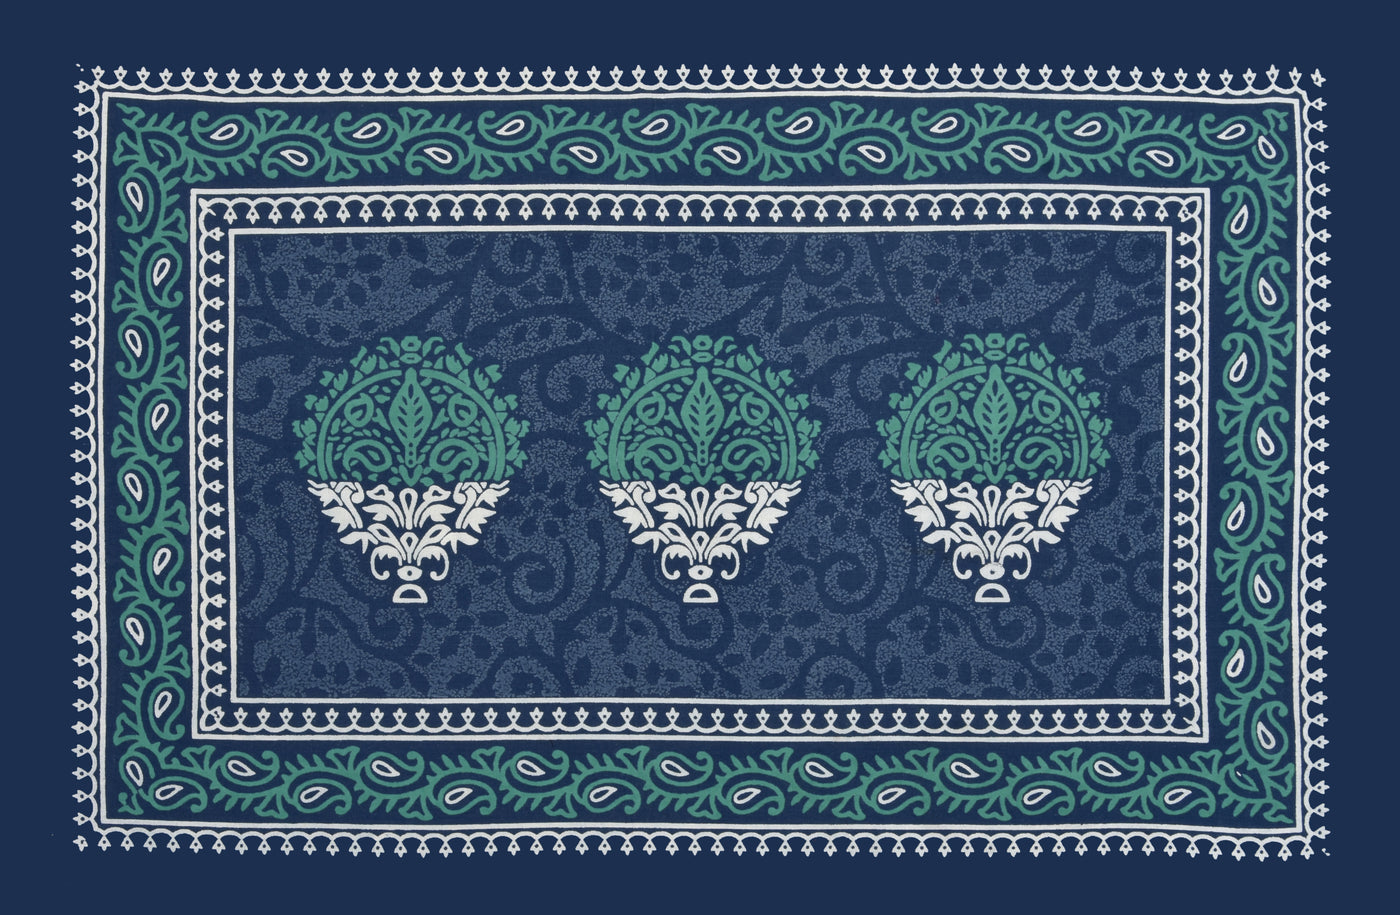 Rajasthani Jaipuri bedsheet with floral design